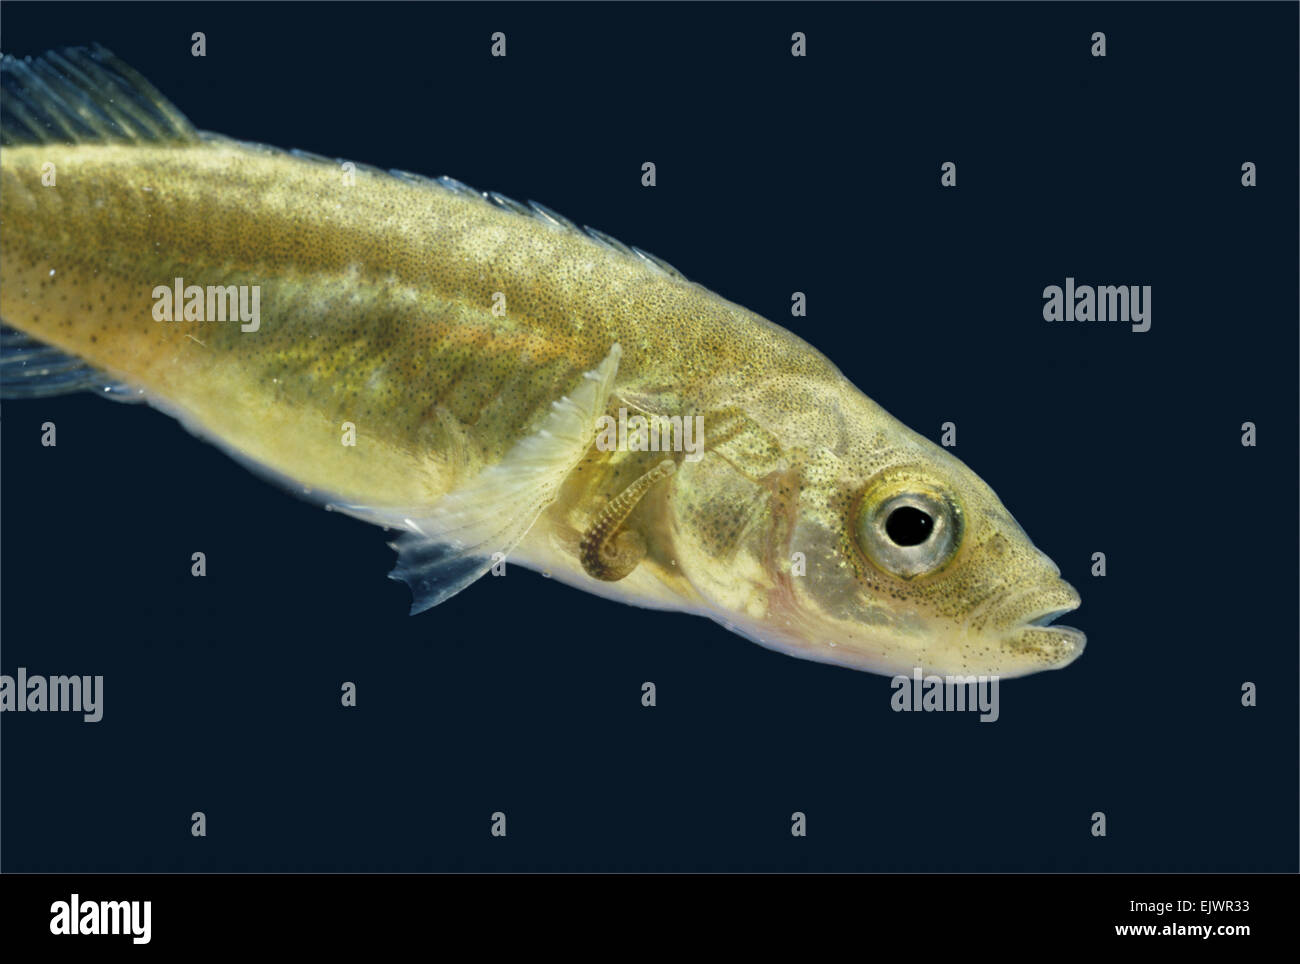 Fish Leech - Piscicola geometra Stock Photo - Alamy